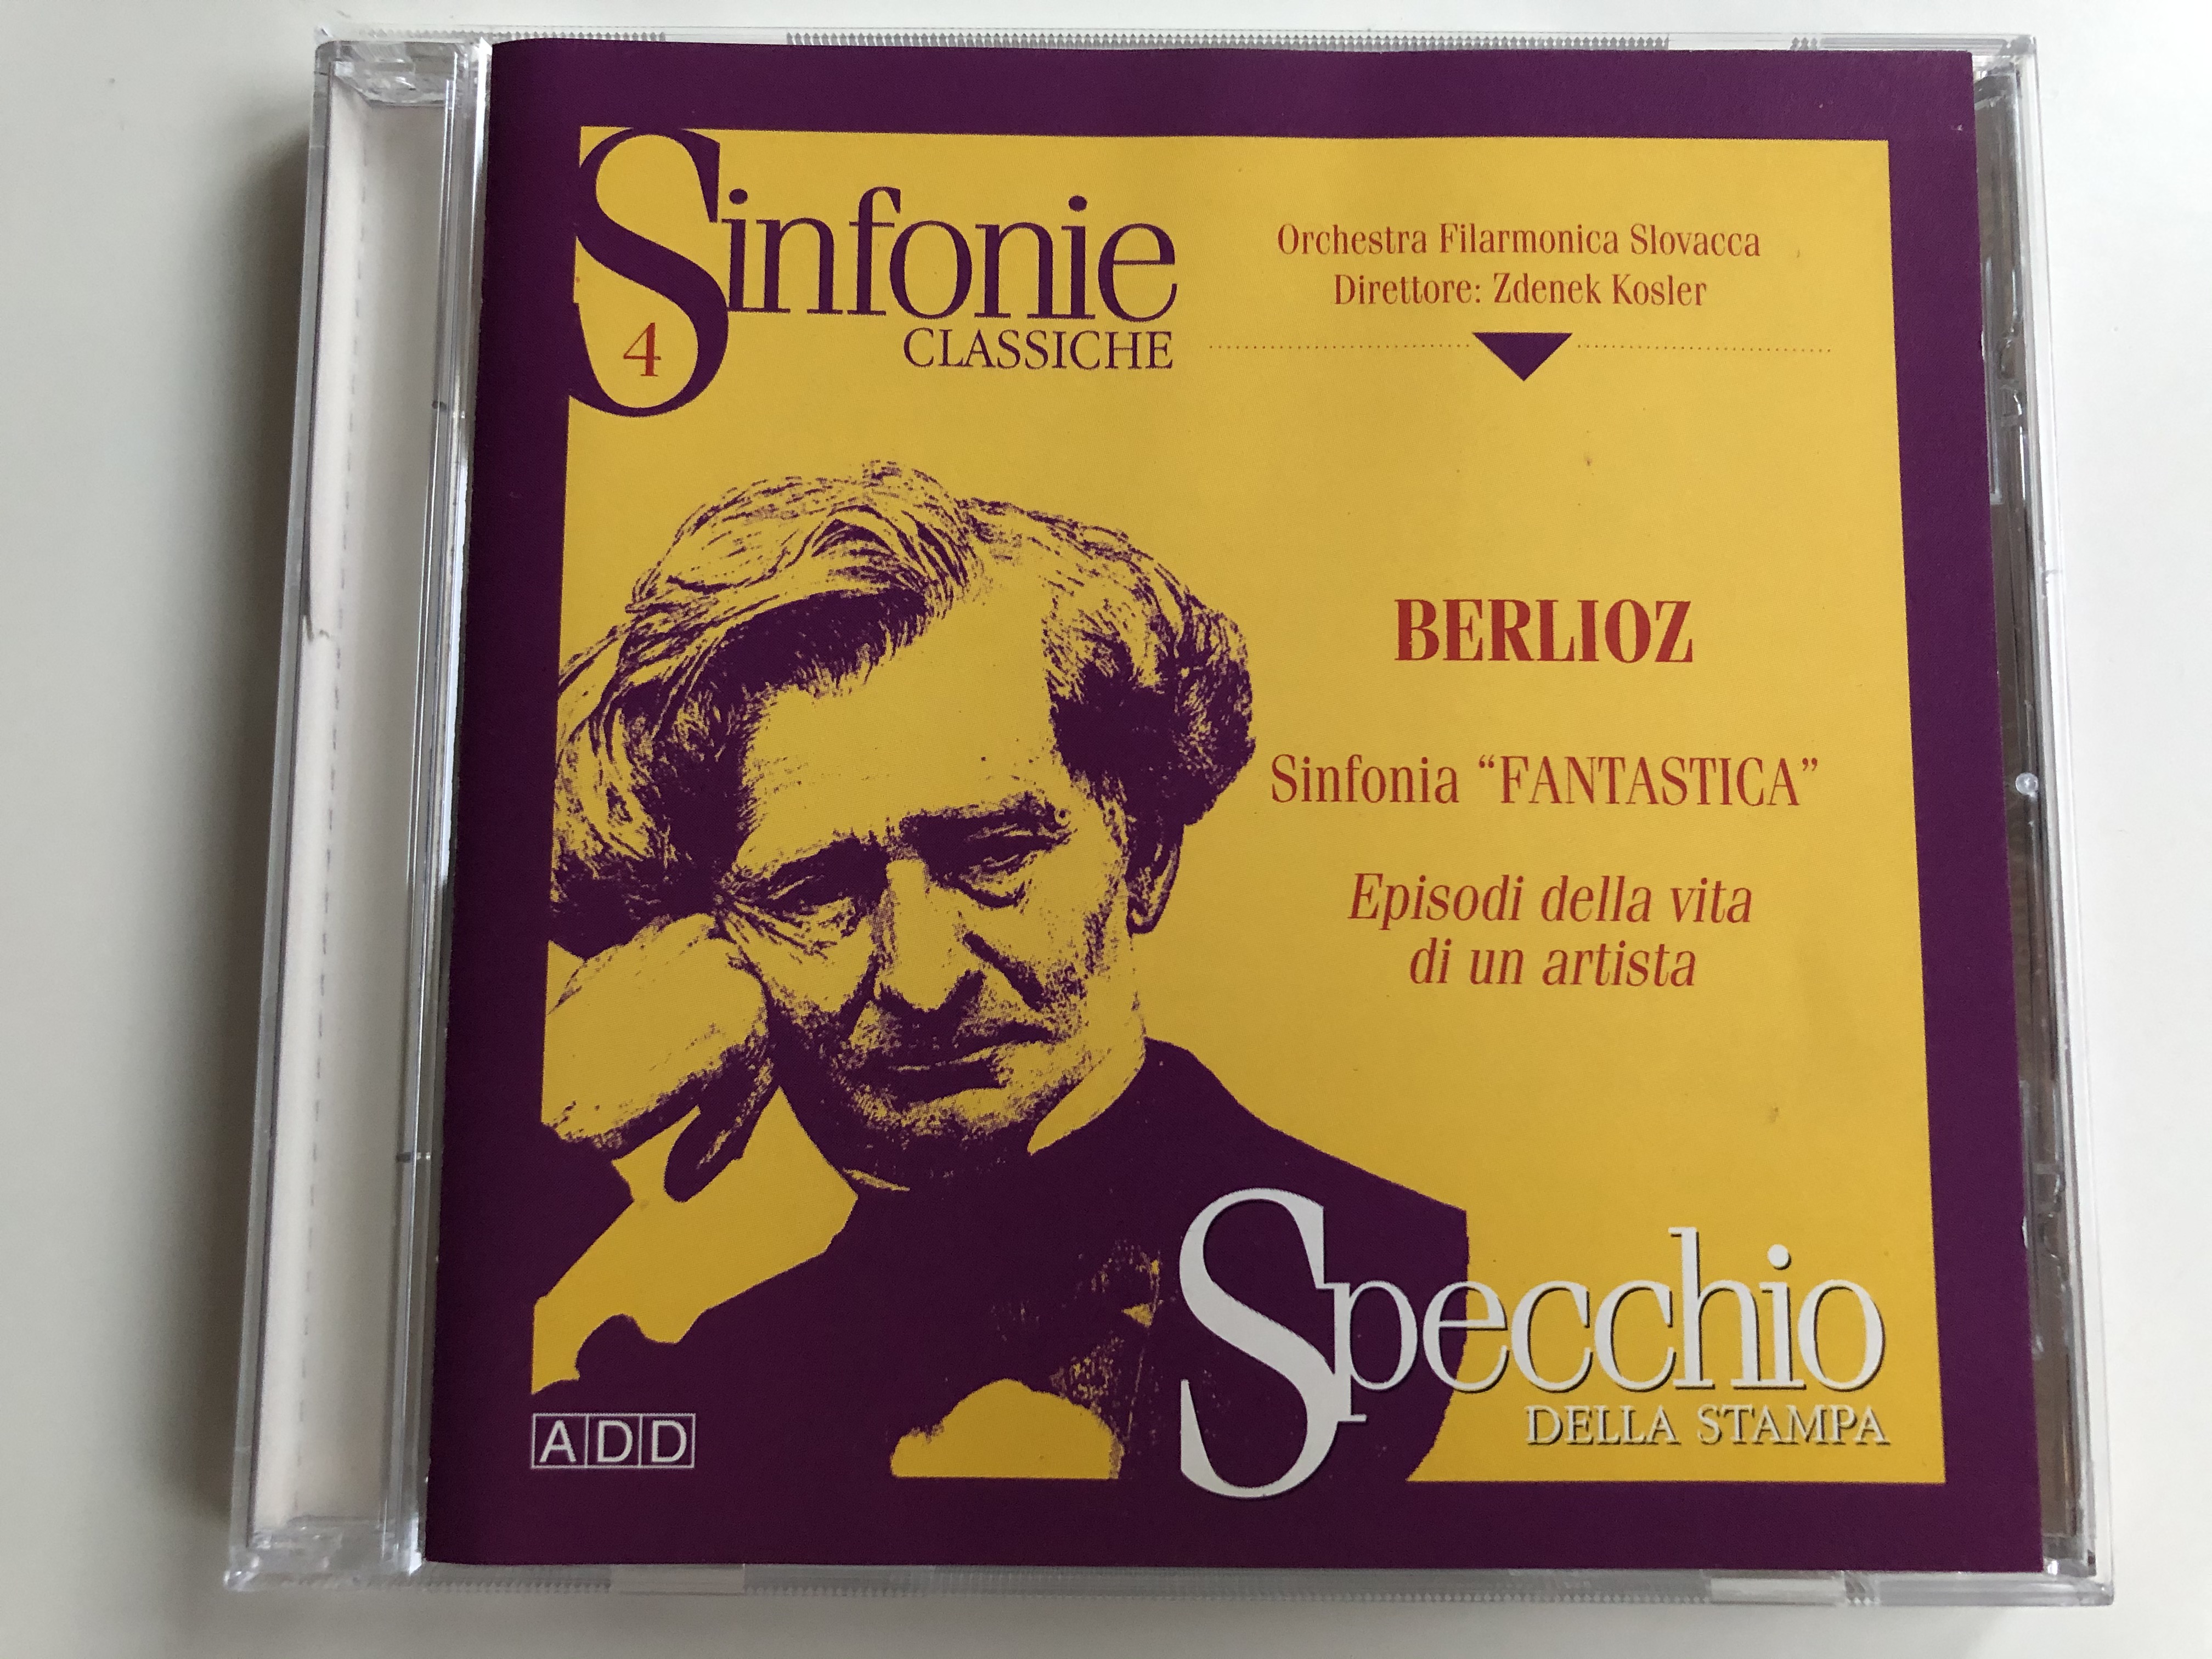 sinfonie-classiche-4-berlioz-sinfonia-fantastica-episodi-della-vita-di-un-artista-orchestra-filarmonica-slovacca-zdenek-kosler-specchio-della-stampa-audio-cd-1996-stereo-i-0696075-1-.jpg